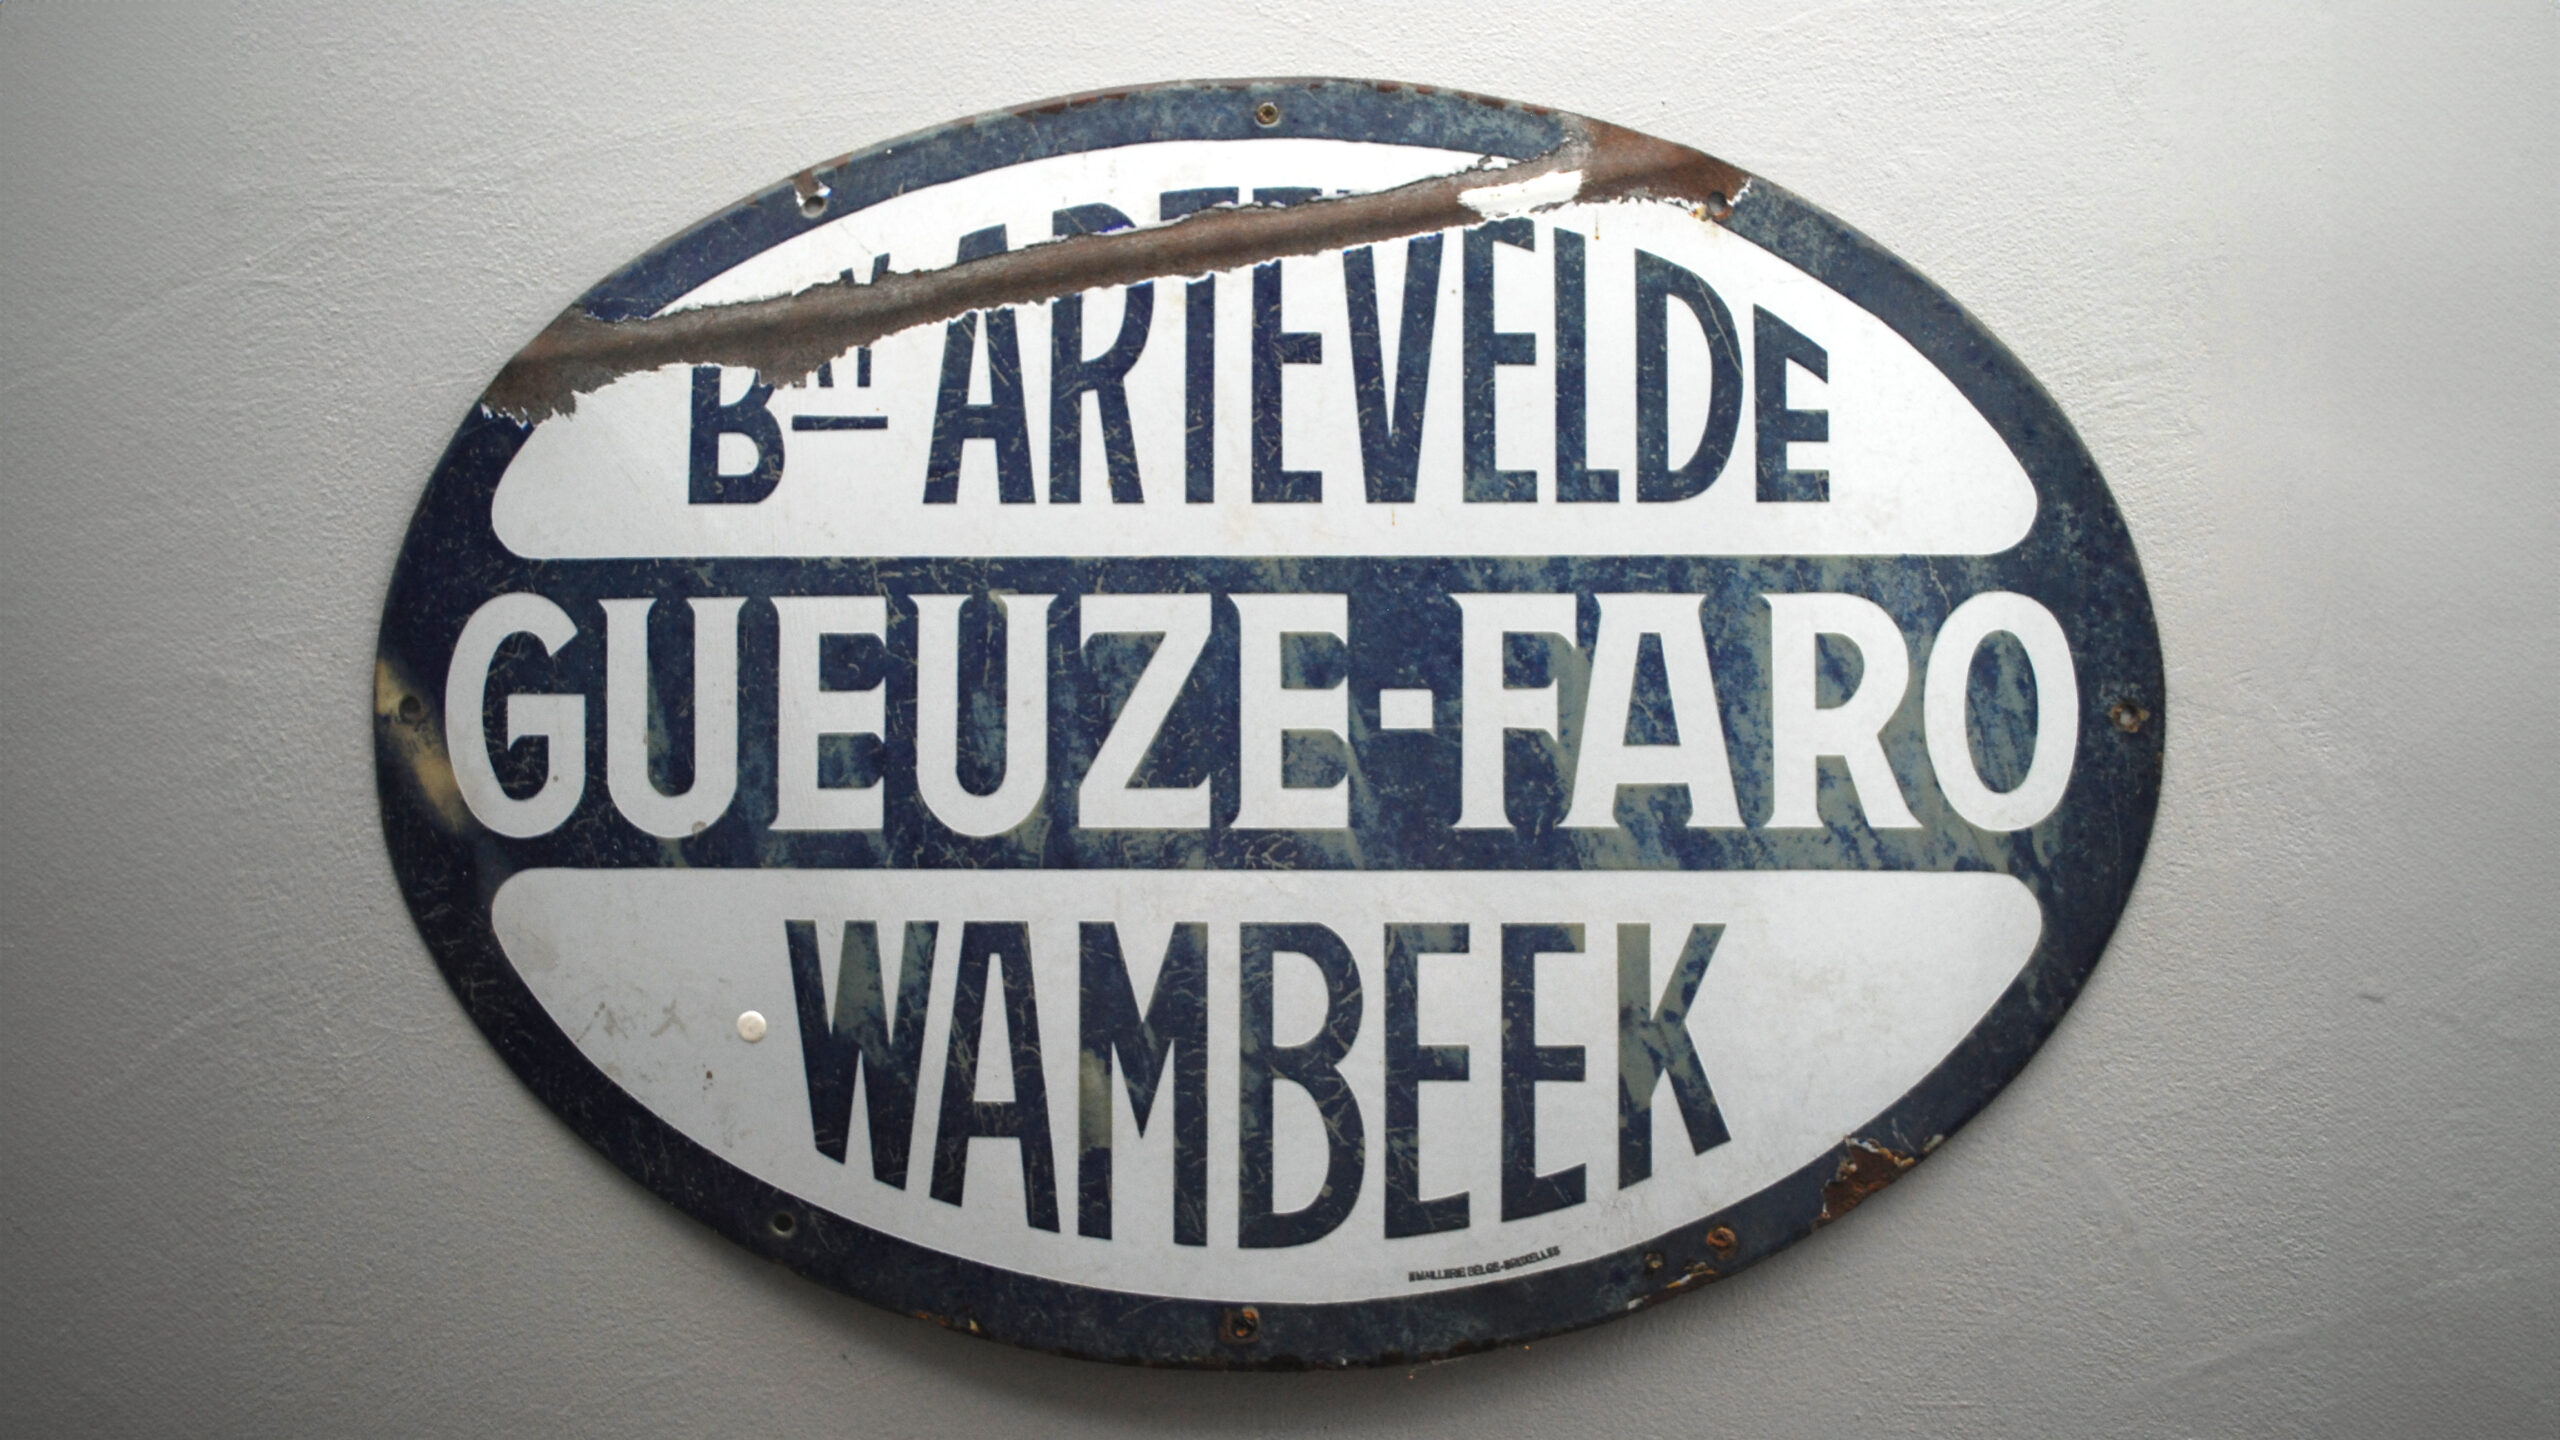 Geuze-Faro_Wambeek